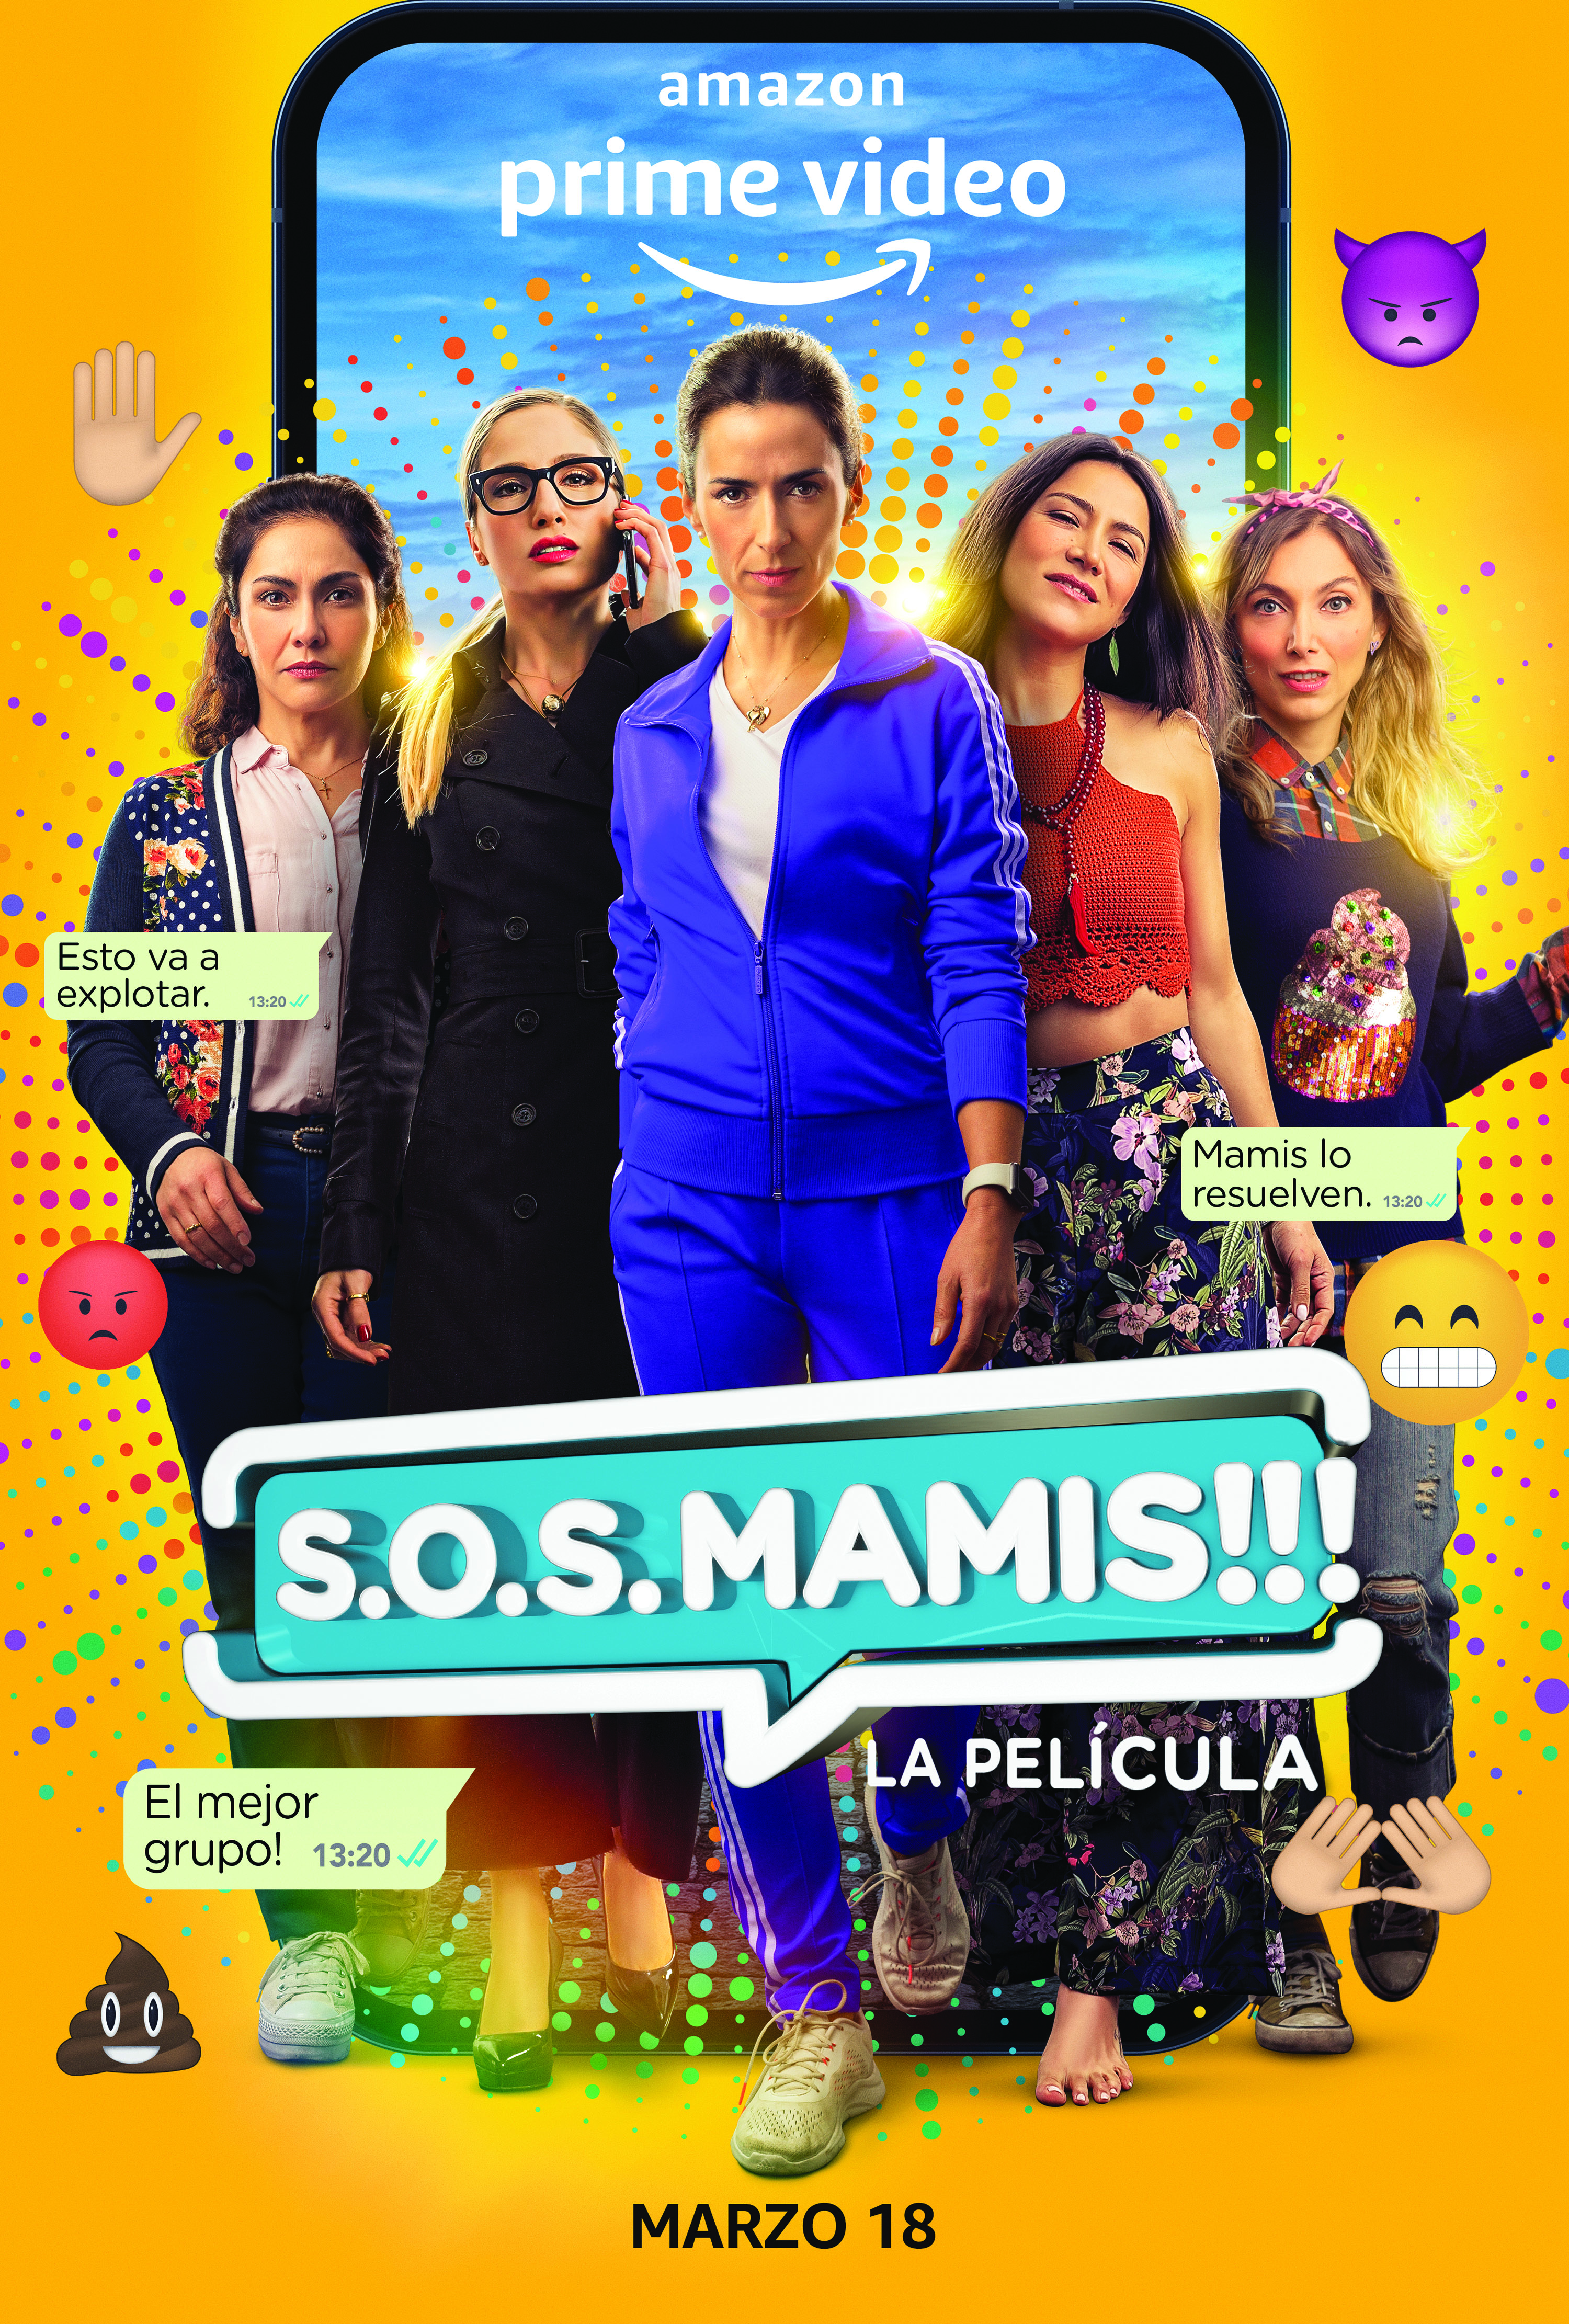 Nonton film S.O.S. Mamis: La Película layarkaca21 indoxx1 ganool online streaming terbaru